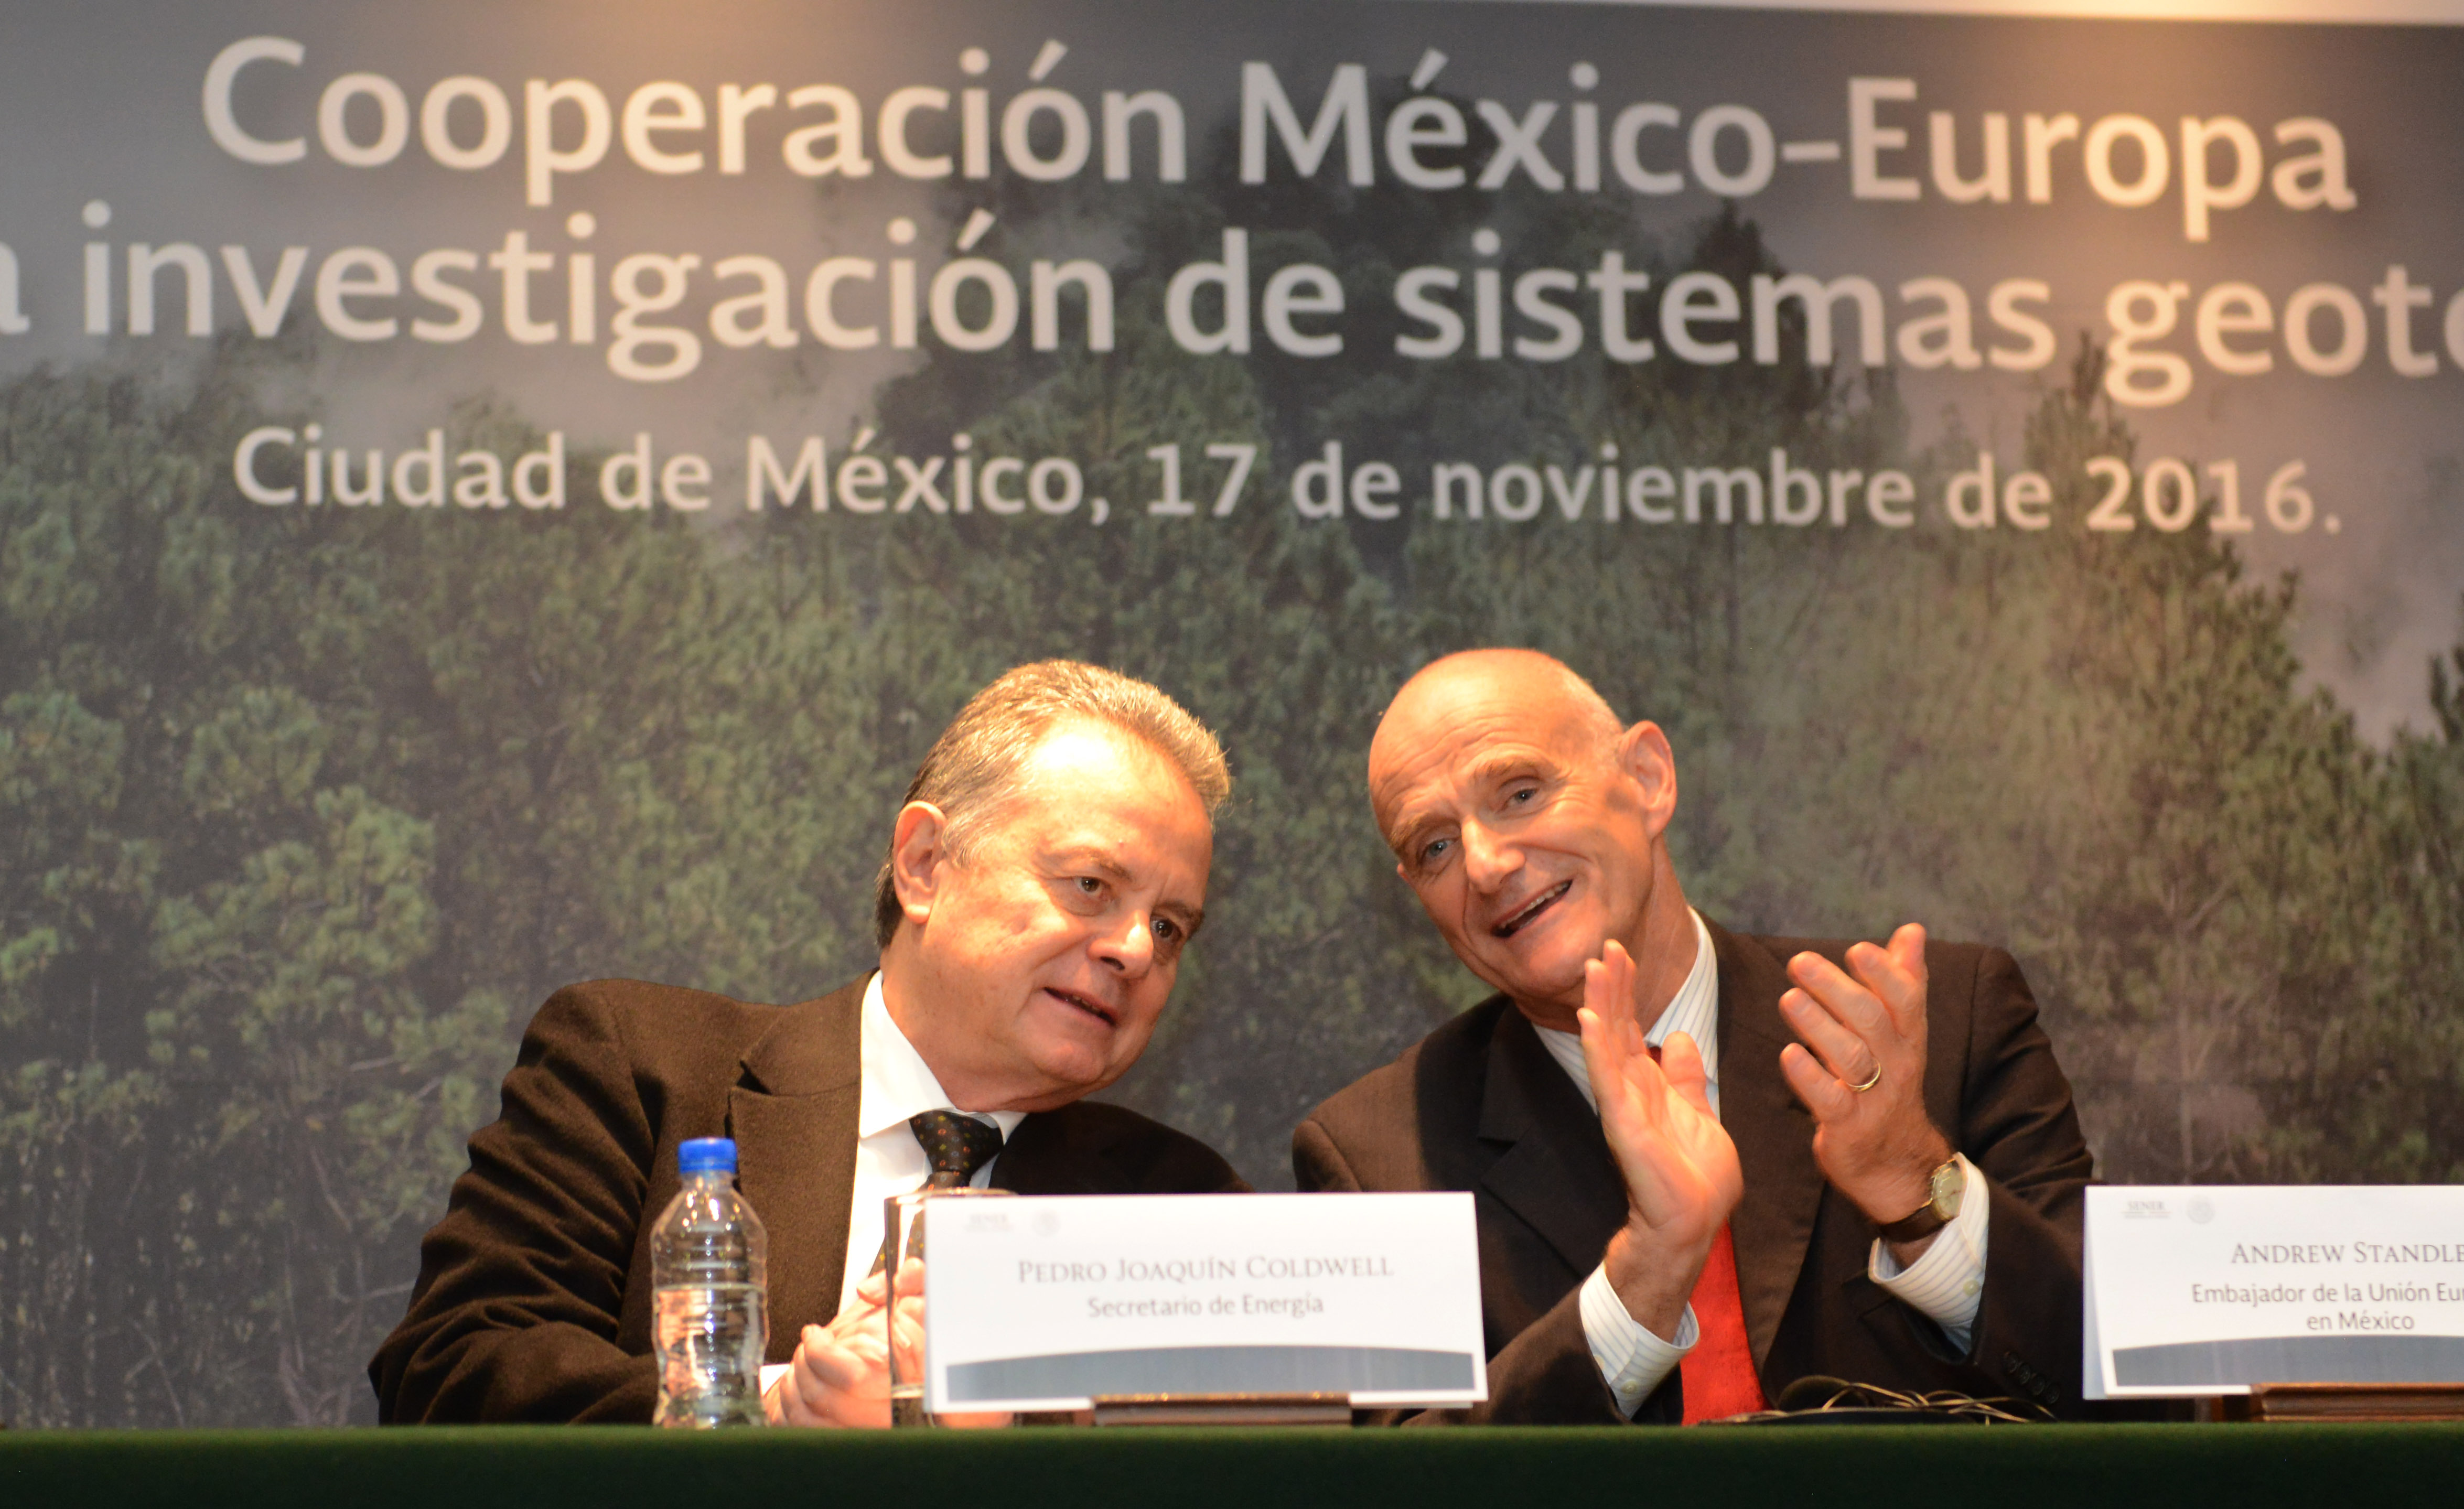 El Secretario de Energía, Licenciado Pedro Joaquín Coldwell, acompañado del Sr. Andrew Standley, Jefe de la Delegación de la Unión Europea en México, encabezaron el lanzamiento del proyecto de cooperación México - Unión Europea para la investigación de sistemas geotérmicos, el cual está dirigido al desarrollo y aplicación de nuevas metodologías y tecnologías en este campo.